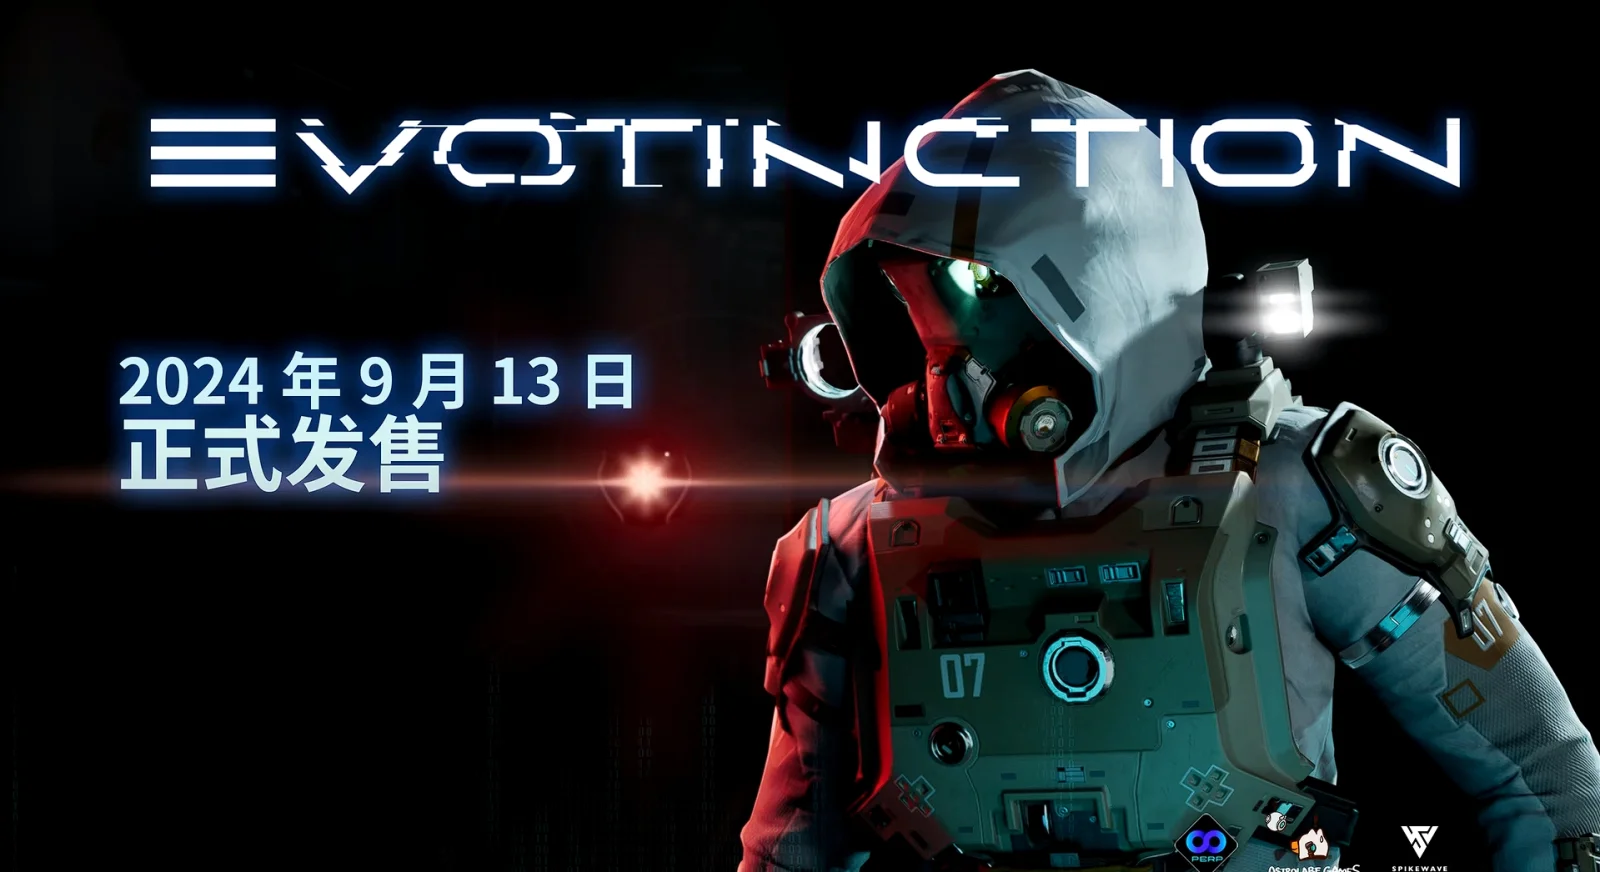 索尼中国之星计划 《演灭 EVOTINCTION》将于9月13日发售